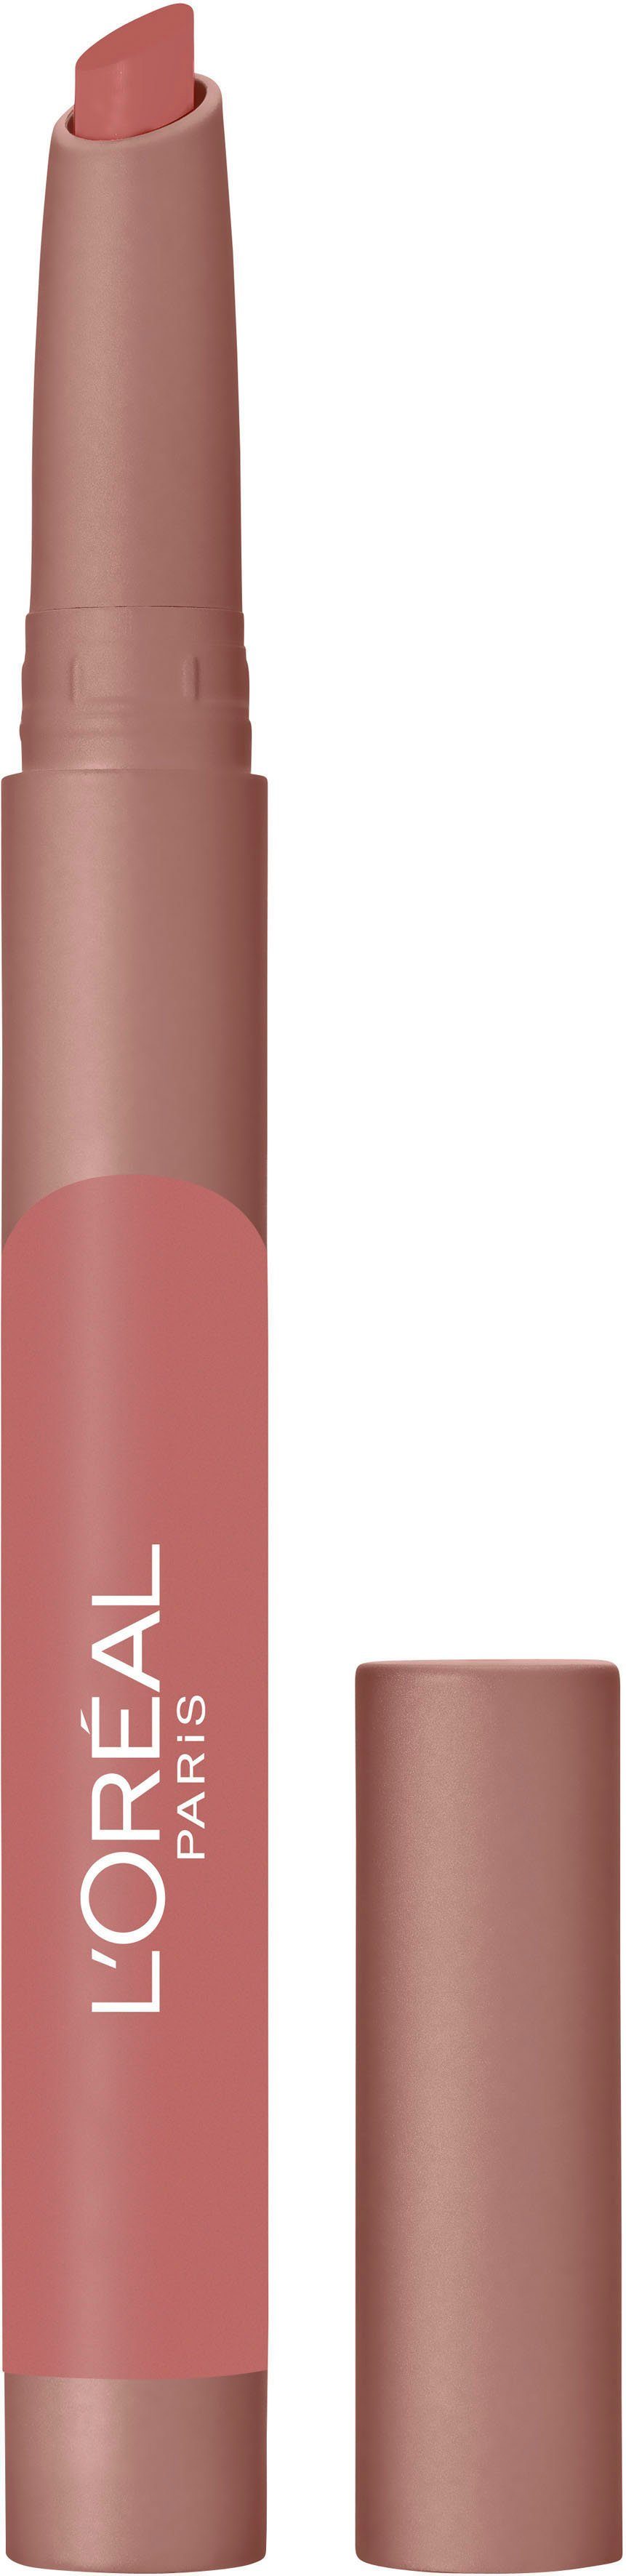 L'ORÉAL PROFESSIONNEL PARIS L'ORÉAL PARIS Lippenstift Infaillible Matte Lip Crayon 102 Caramel Blondie | Lippenstifte